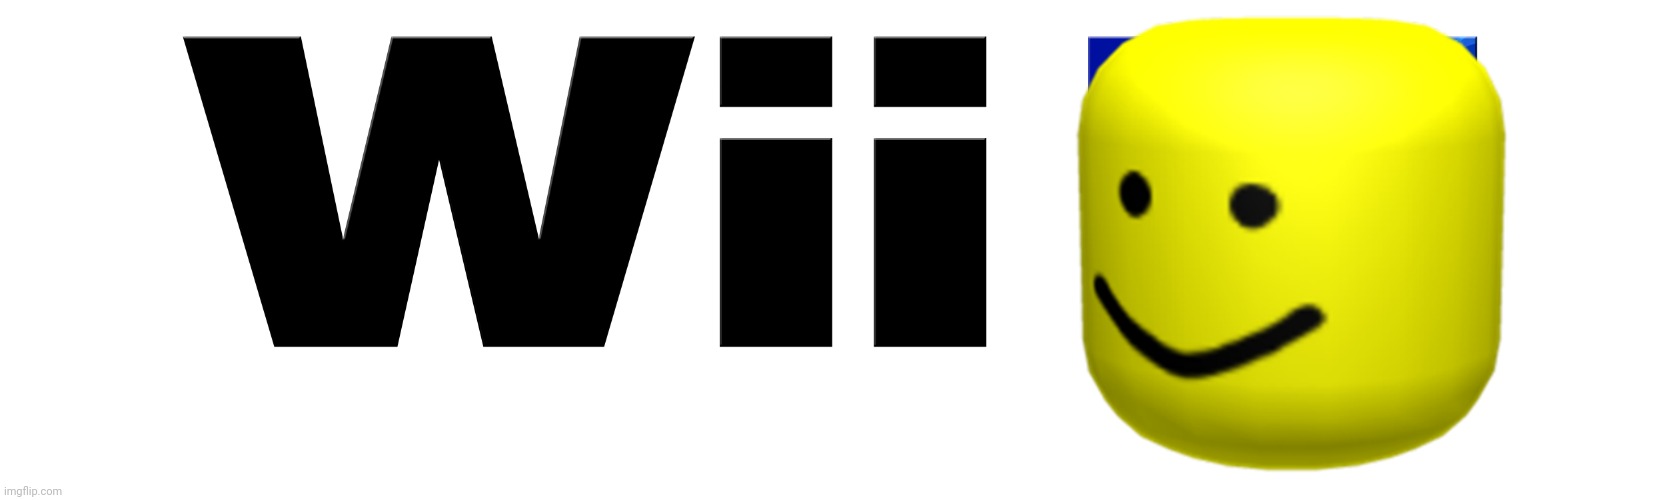 Wii Oof Imgflip - roblox wii u oof